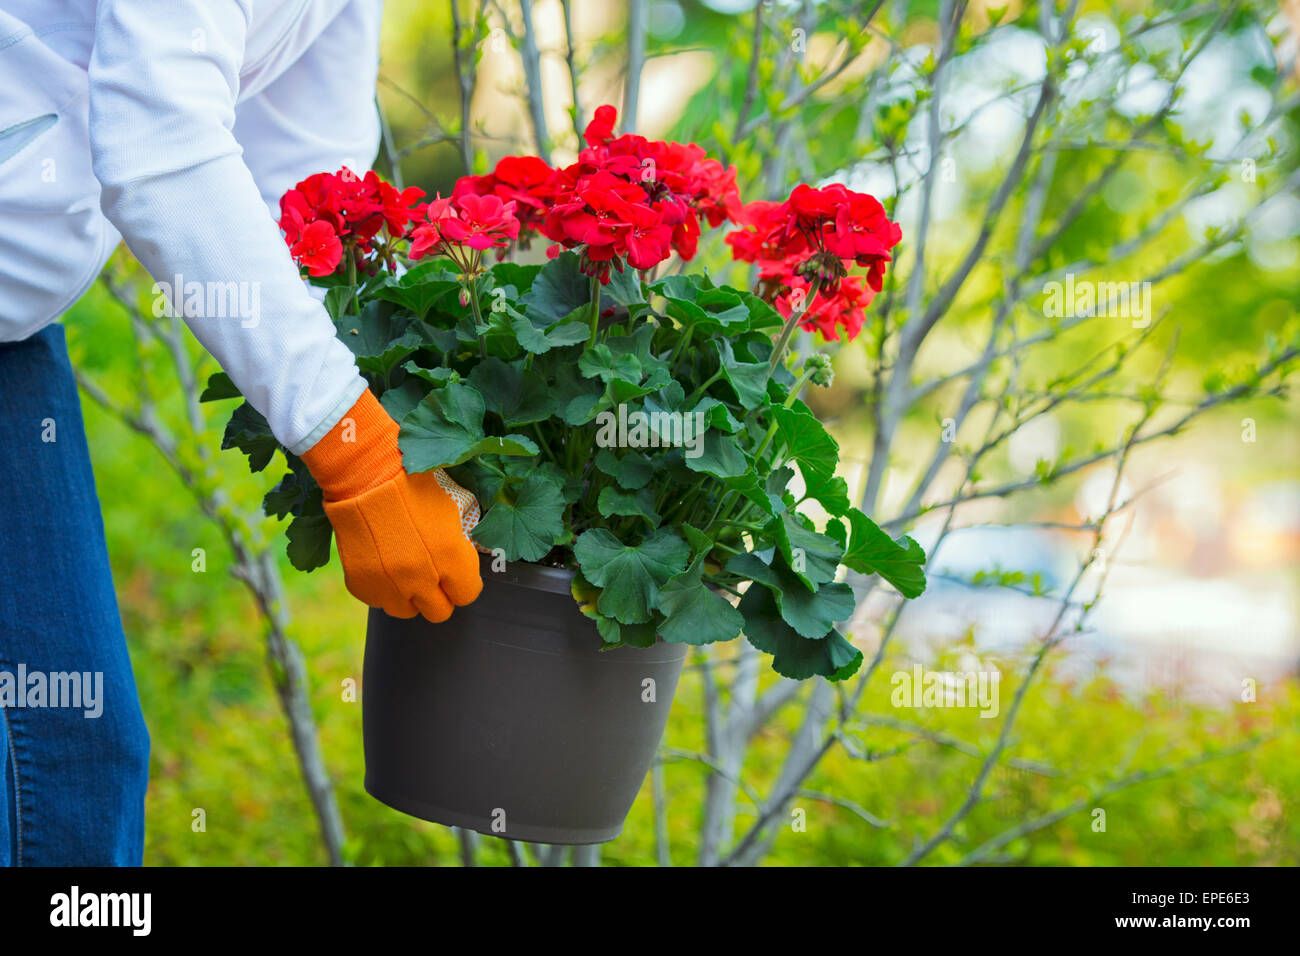 Impianto di geranio, Pot, vasi di geranio, Donna Giardinaggio azienda, Impianto di sollevamento rosso dei gerani fiori Foto Stock